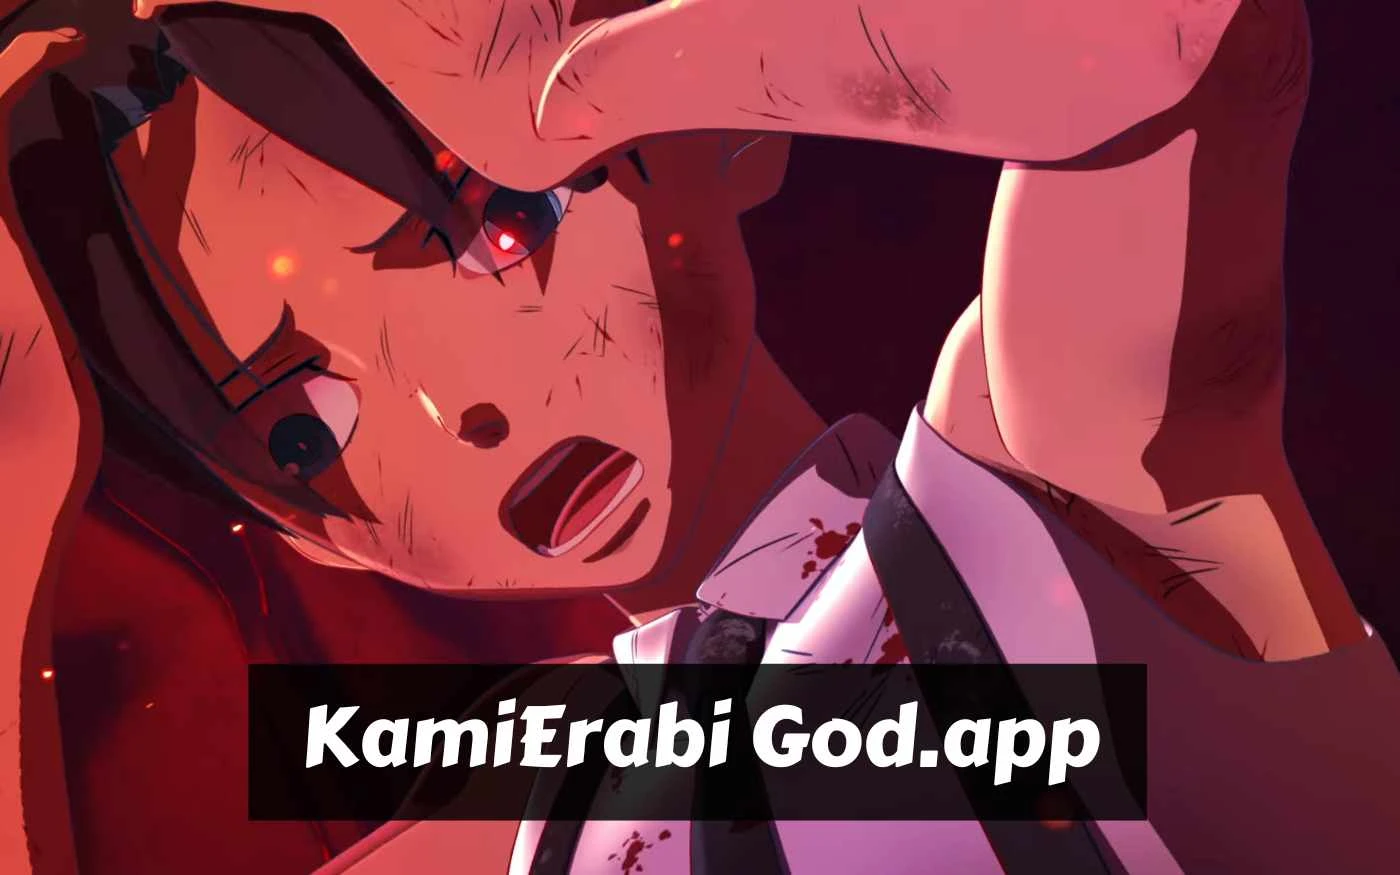 KamiErabi God.app - Wikipedia